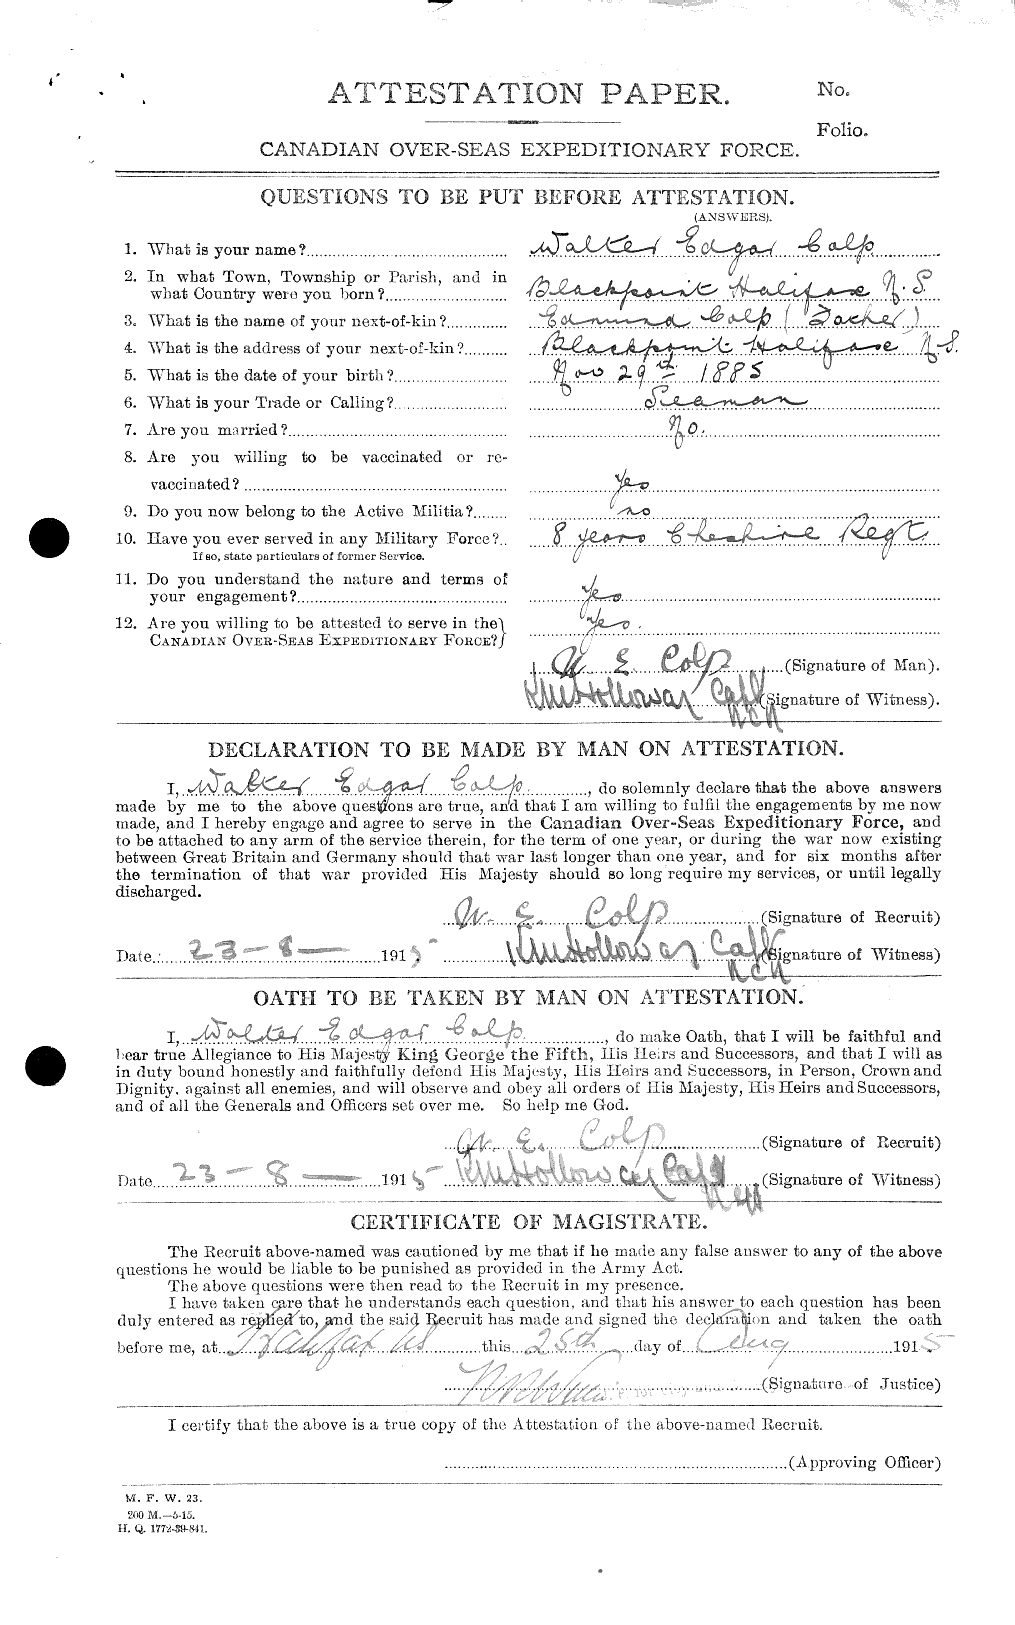 Dossiers du Personnel de la Première Guerre mondiale - CEC 040793a